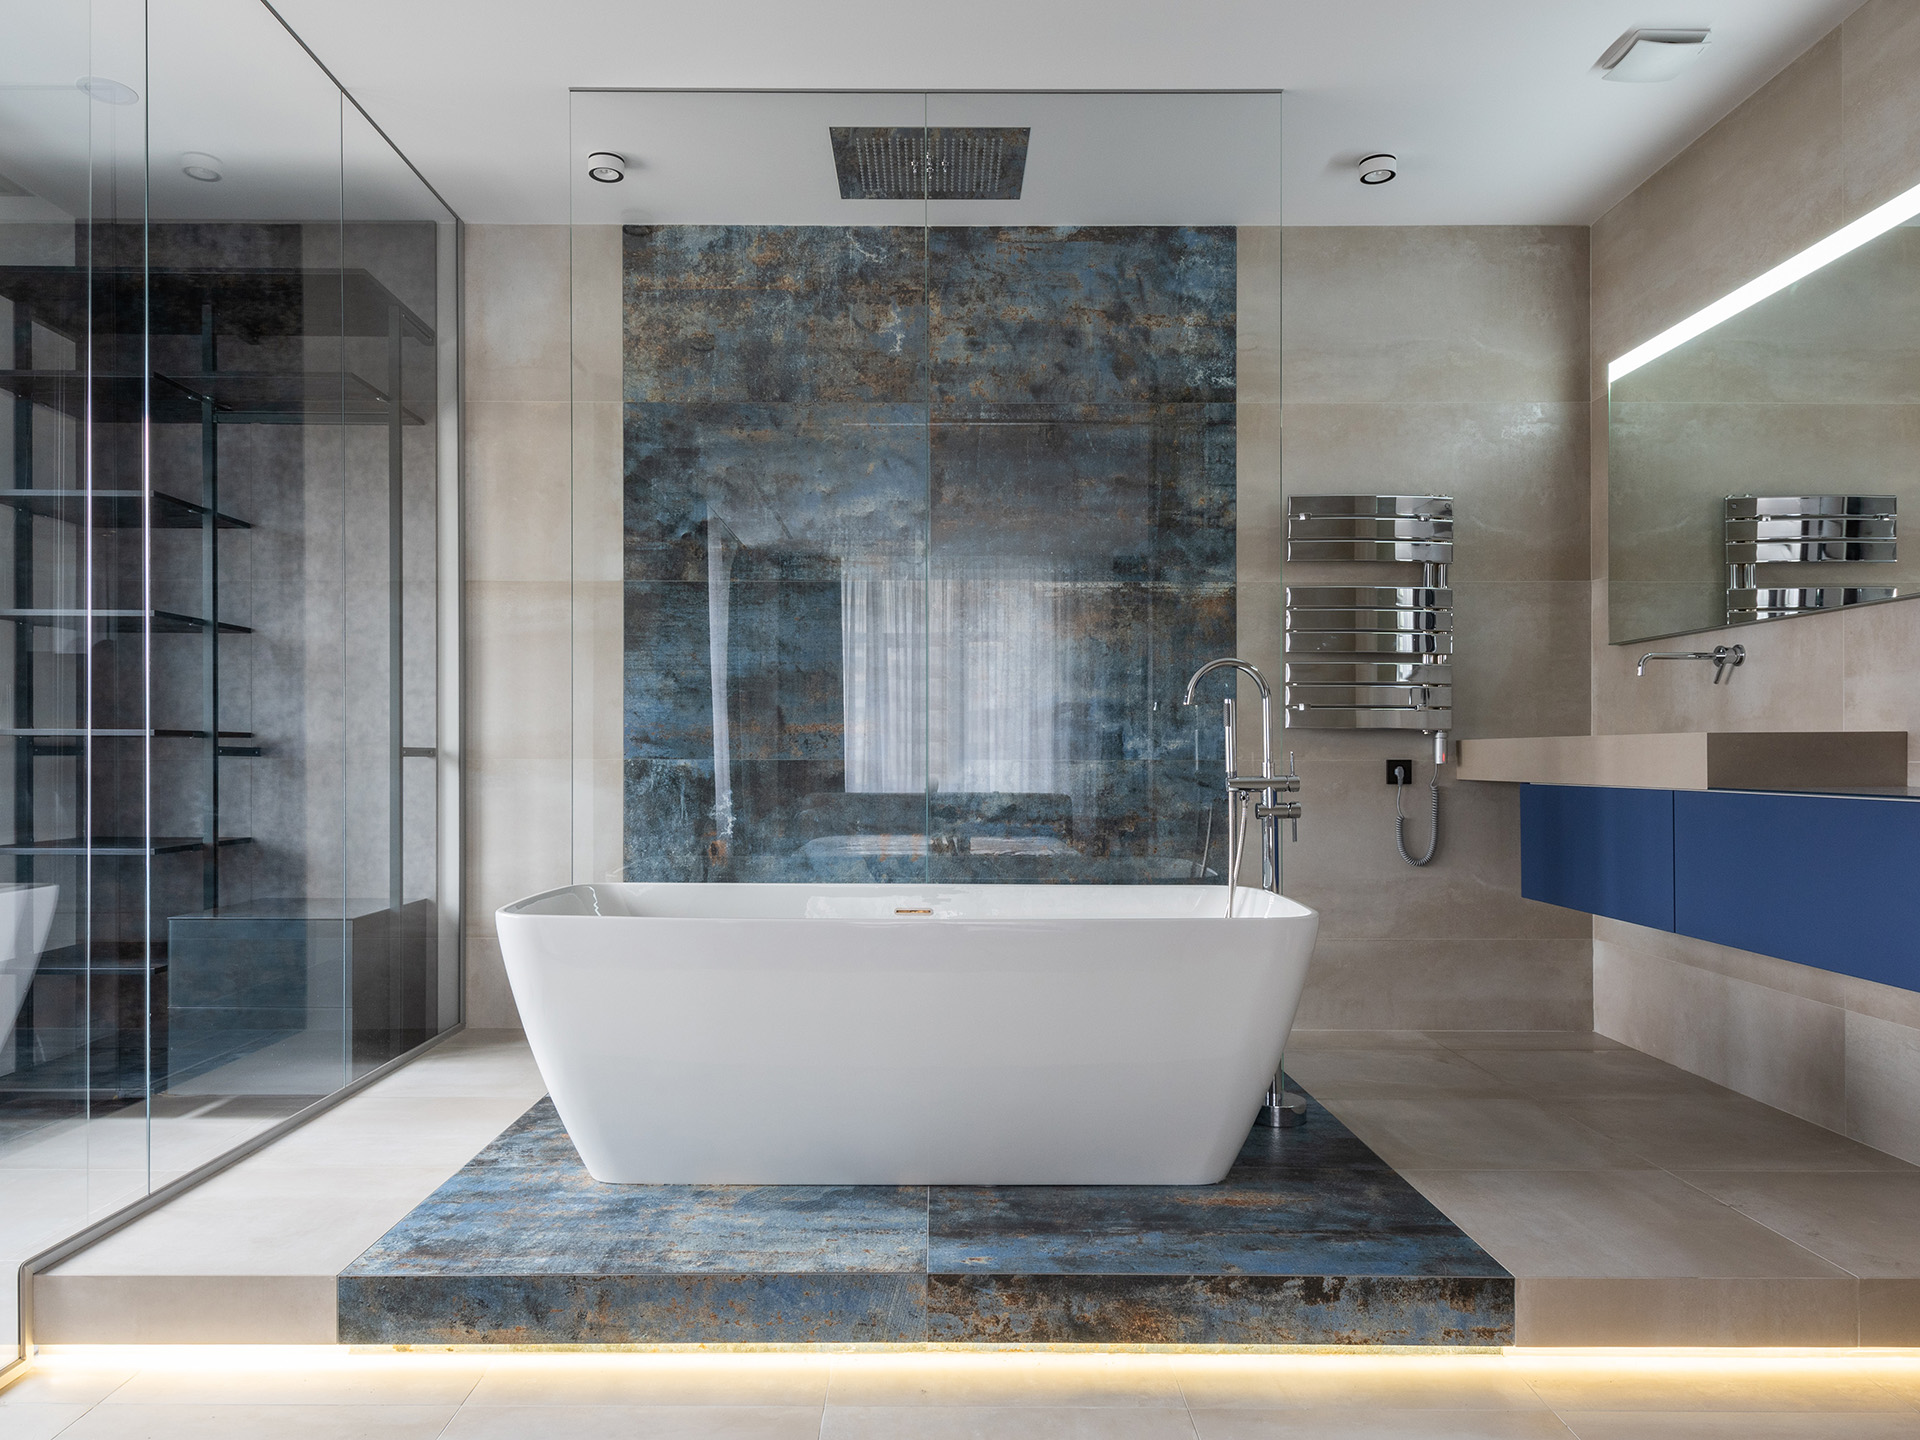 Luxe badkamer: marmer als interieurelement voor designliefhebbers